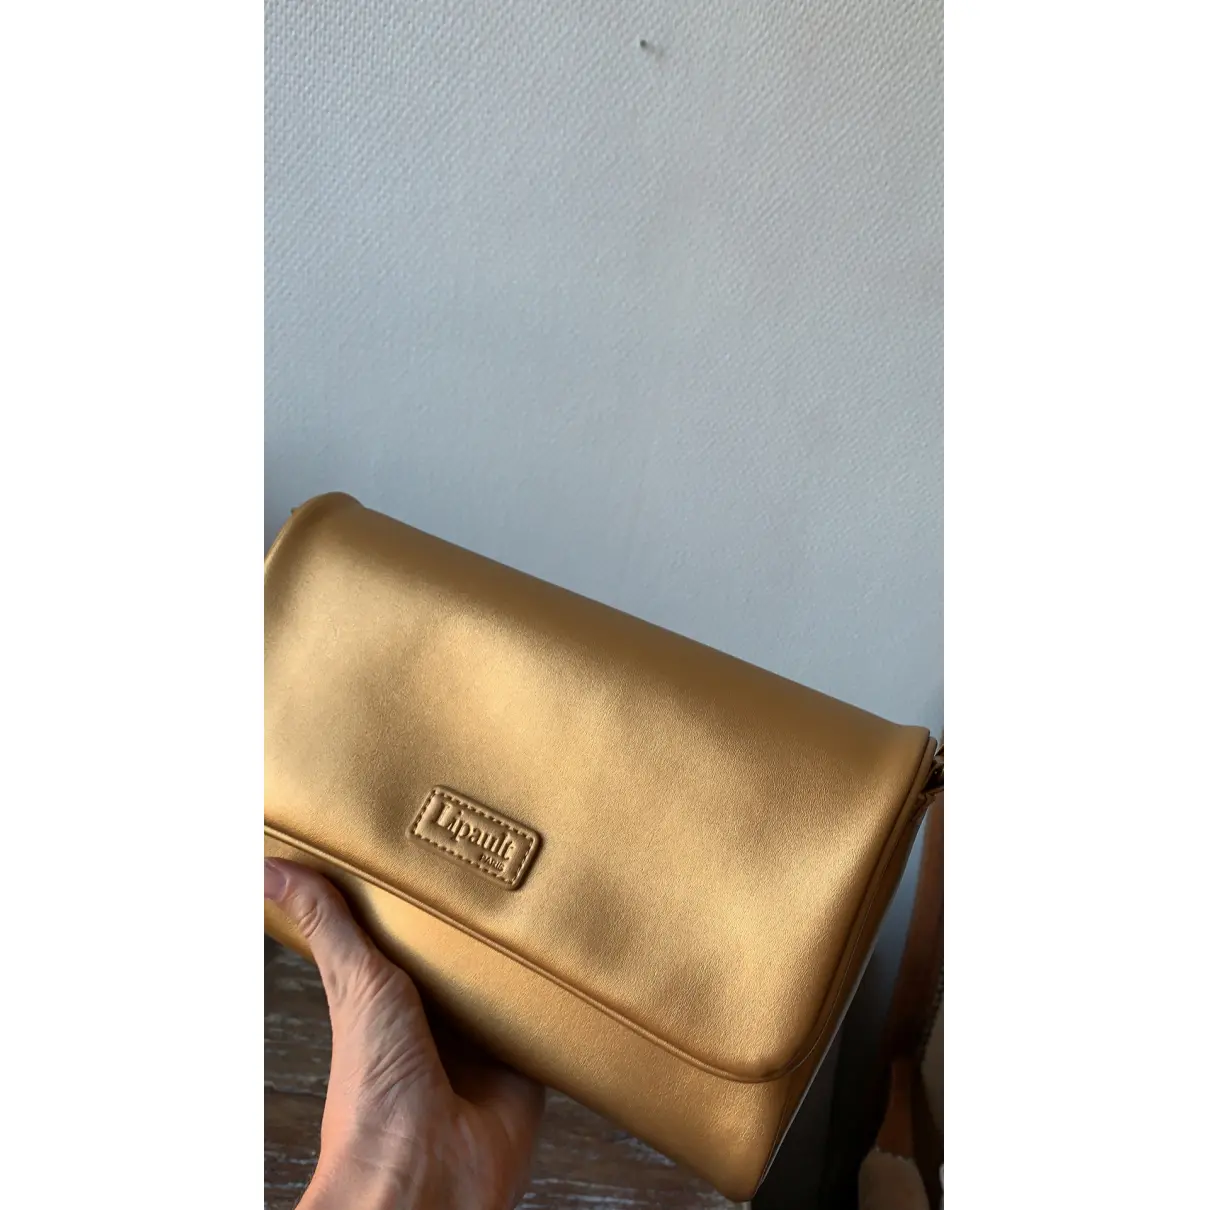 Vegan leather handbag Lipault